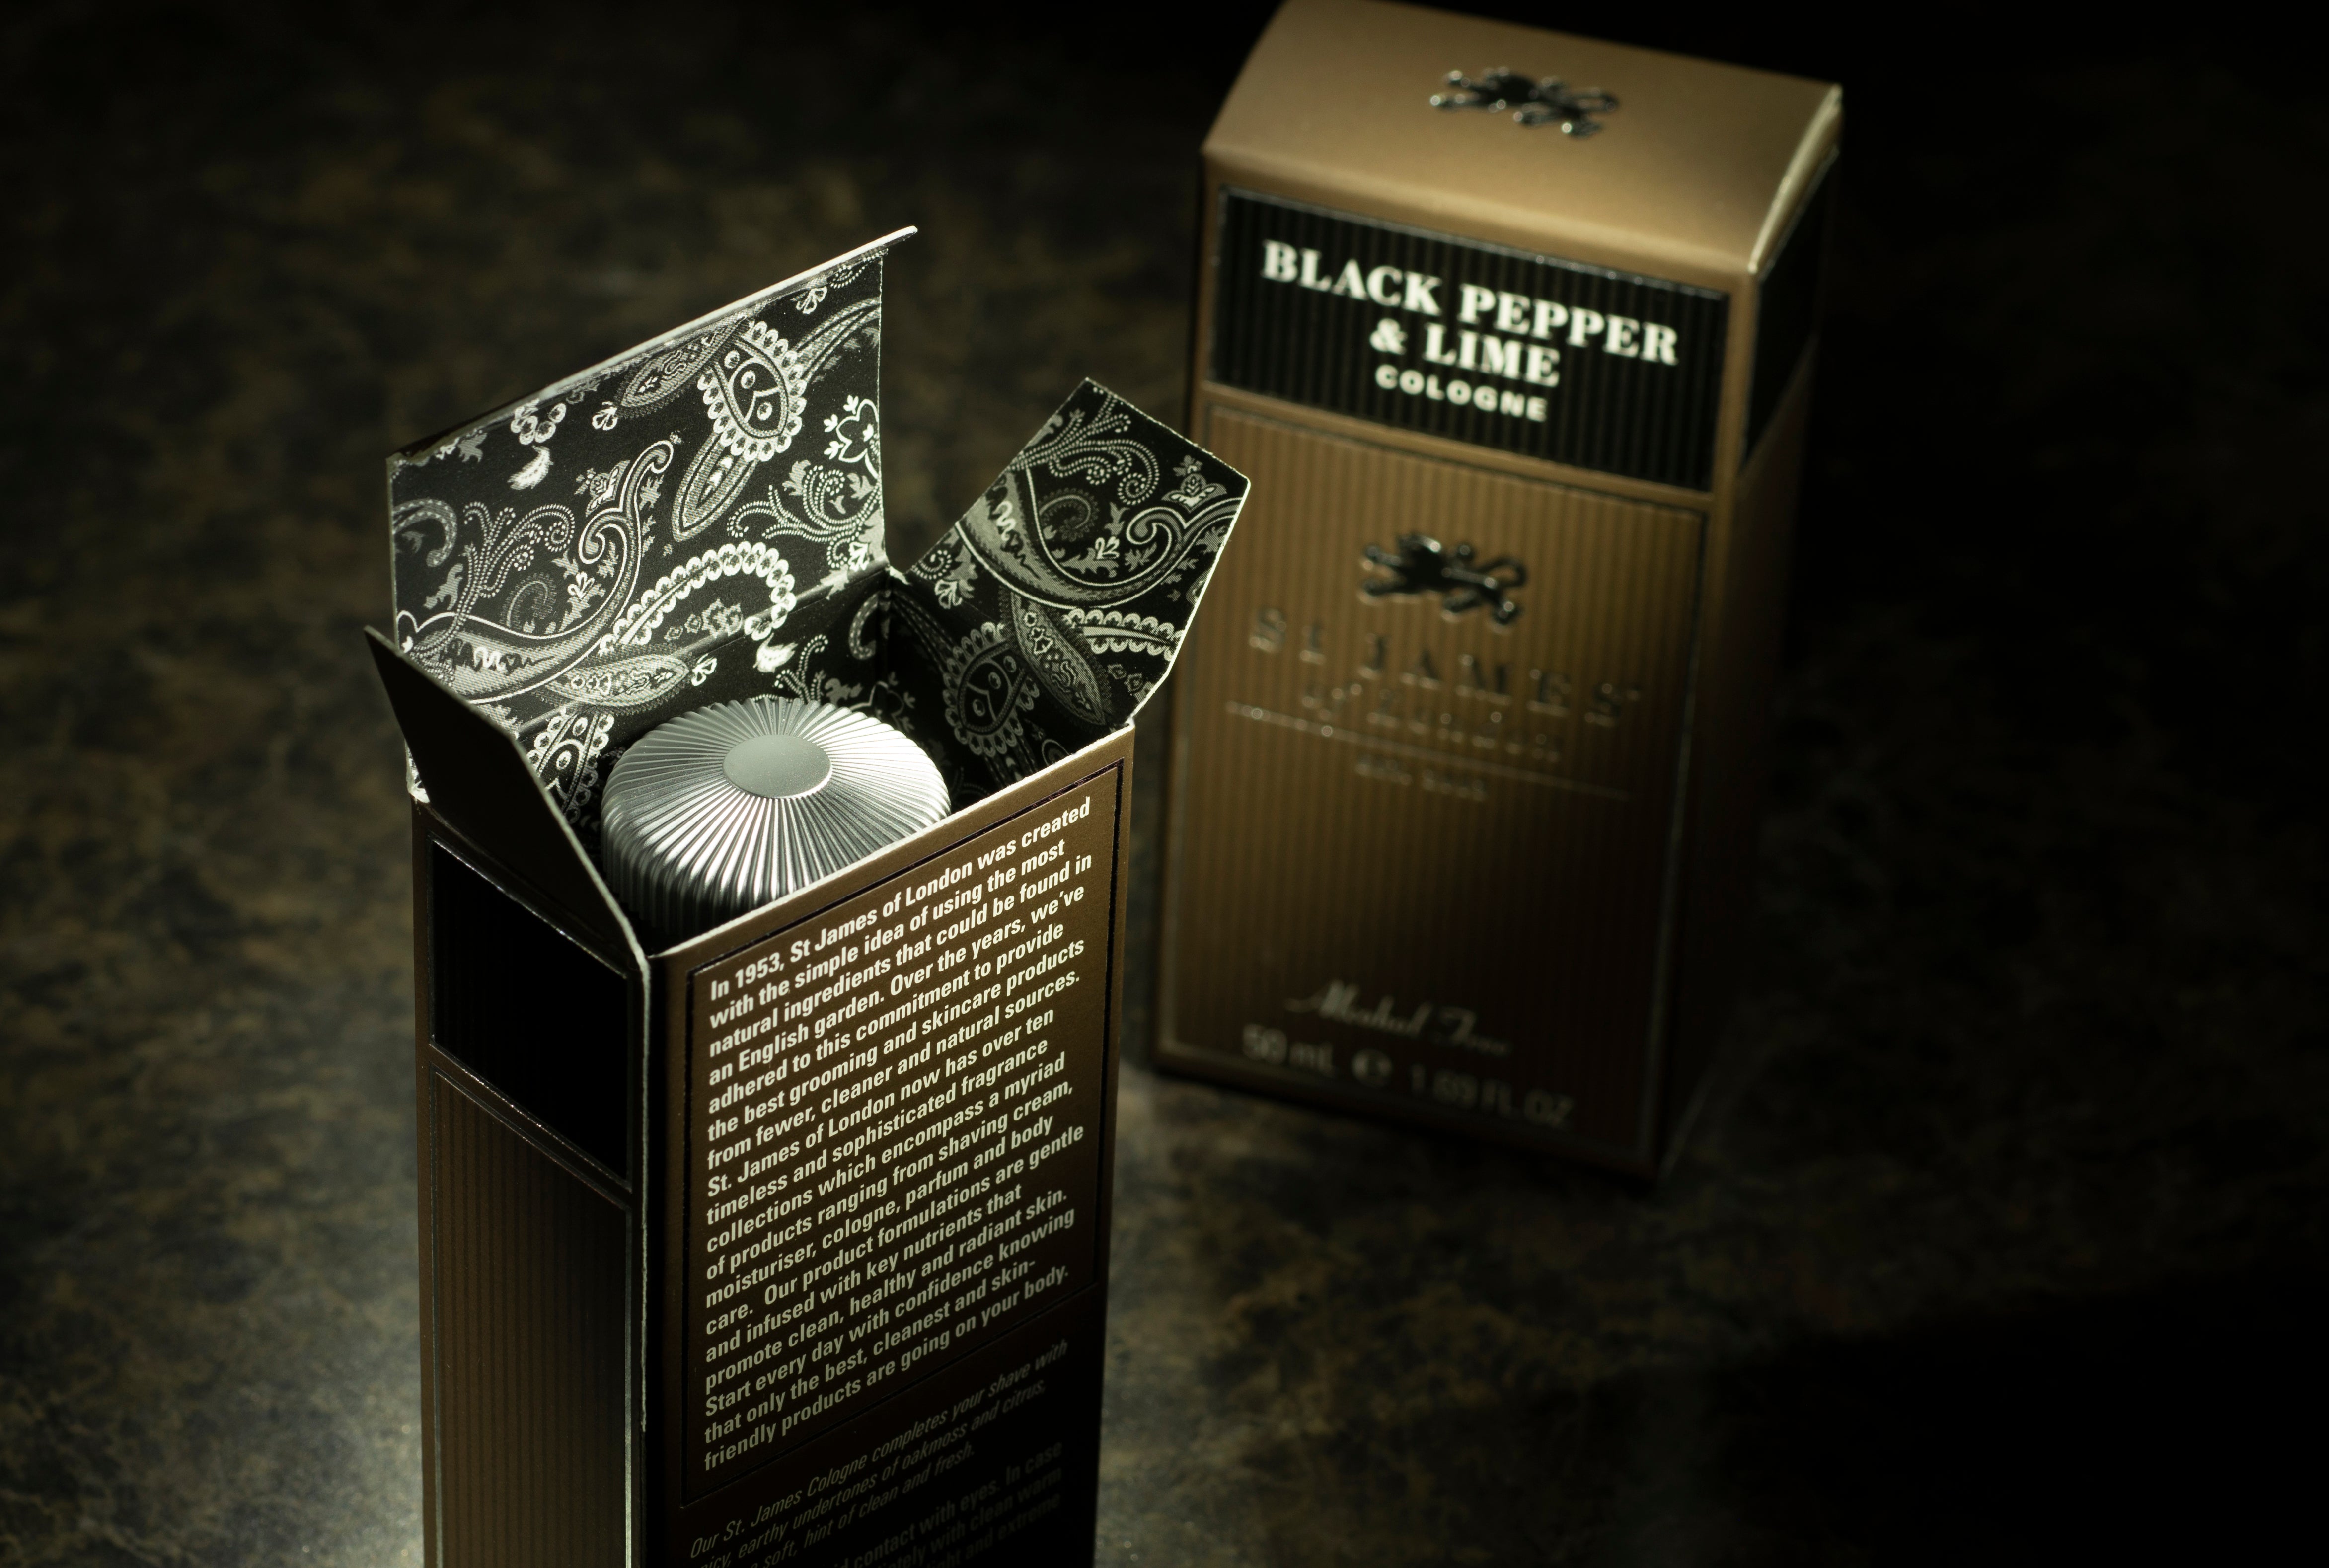 Black Pepper &amp; Lime Cologne (4463114846262)